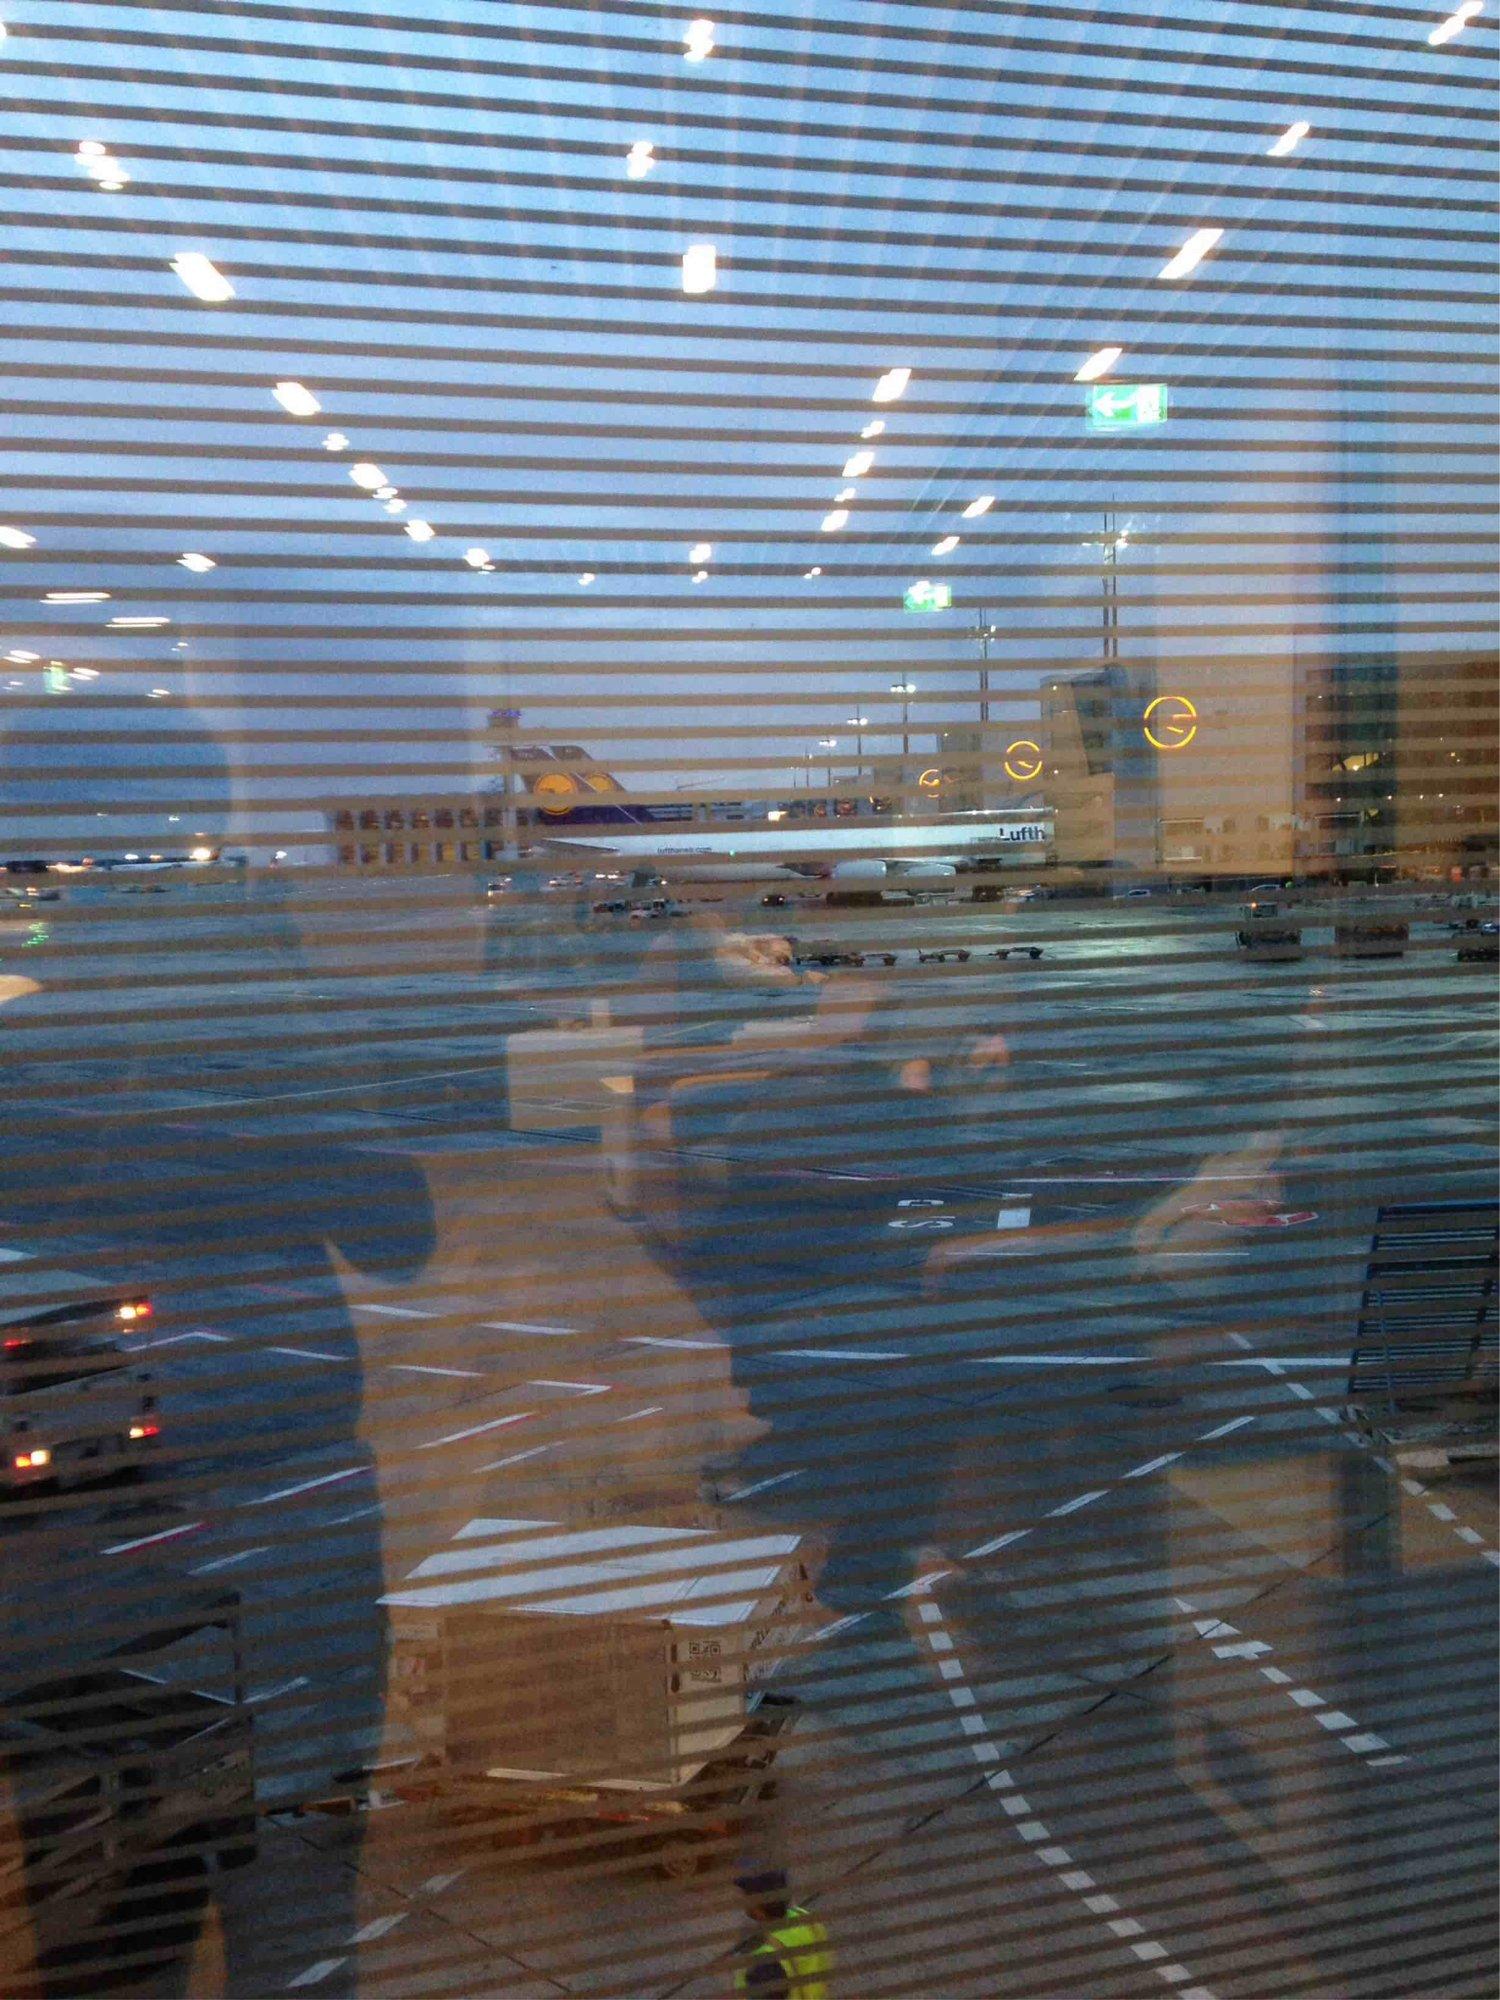 Lufthansa Business Lounge (Schengen, Gate A13) image 11 of 13